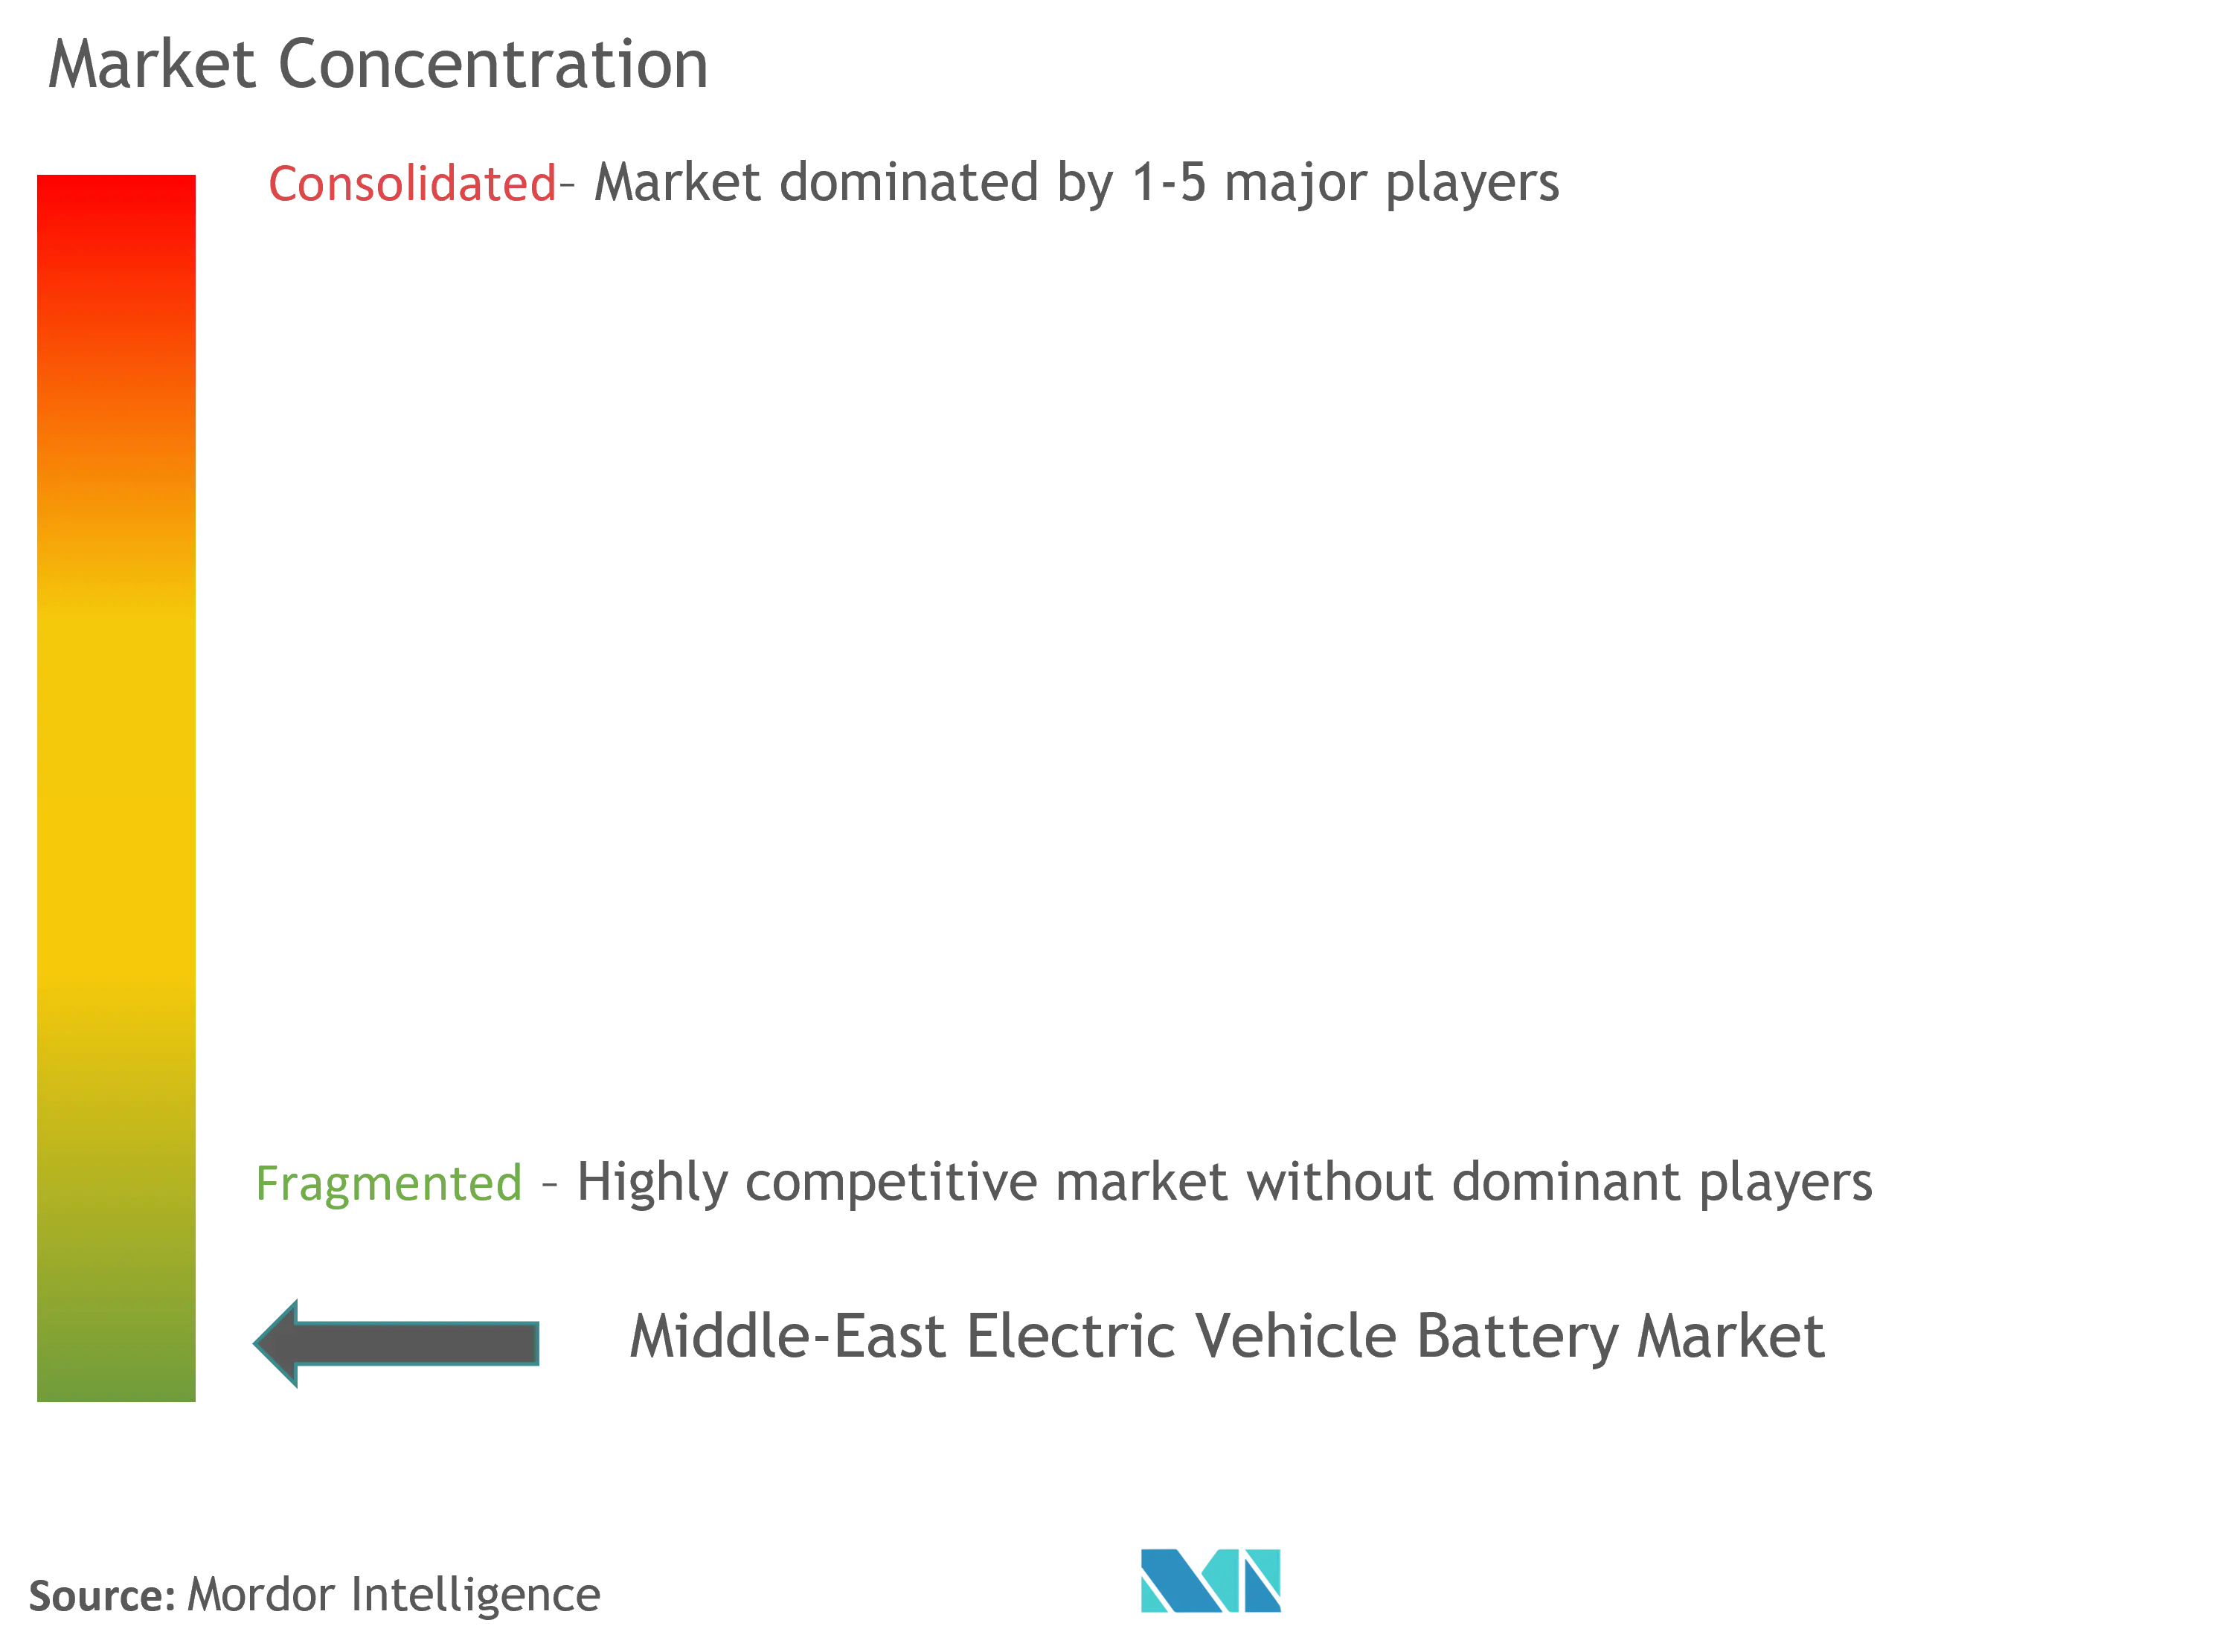 中東の電気自動車用電池市場集中度